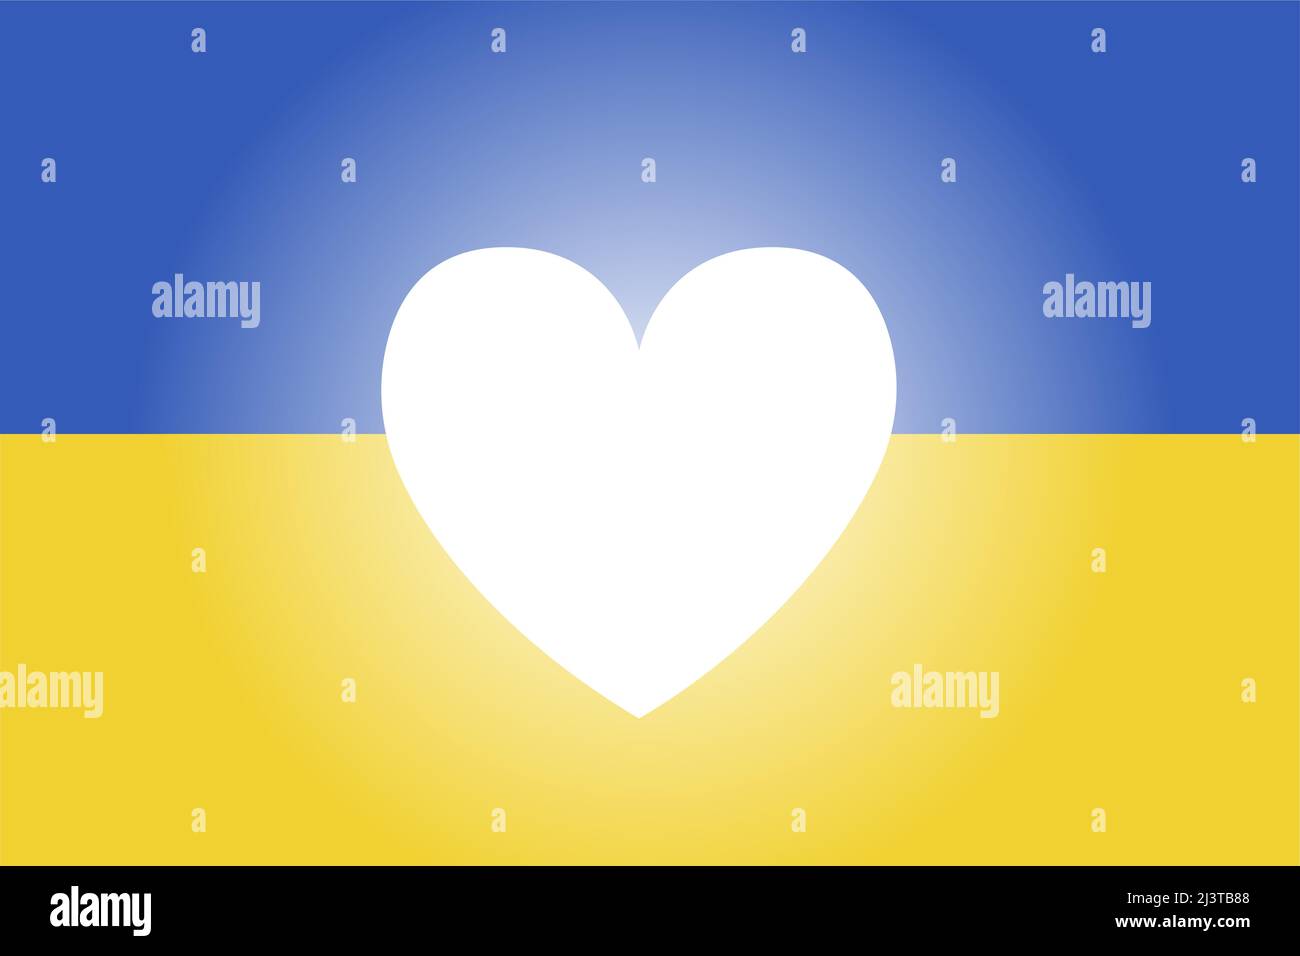 Stop war in Ukraine Konzept Vektor-Illustration. Herz, Liebe für die Ukraine, ukrainische Flagge Illustration Hintergrund. Rette die Ukraine vor Russland. Stock Vektor